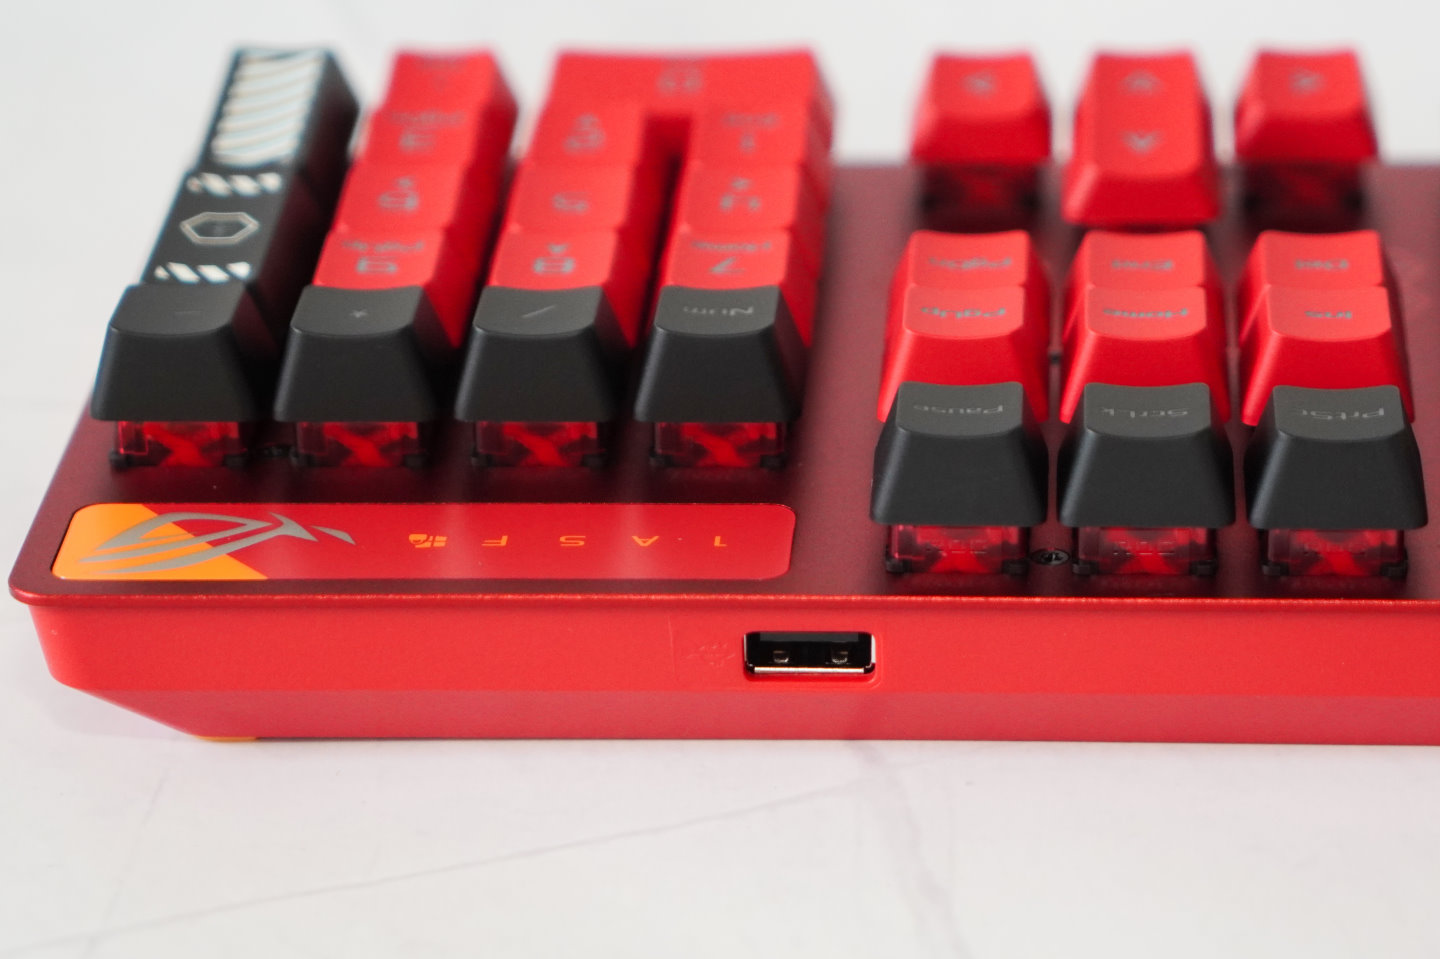 鍵盤數鍵區頂部還有1組USB 2.0端，可用於連接滑鼠或其他備。